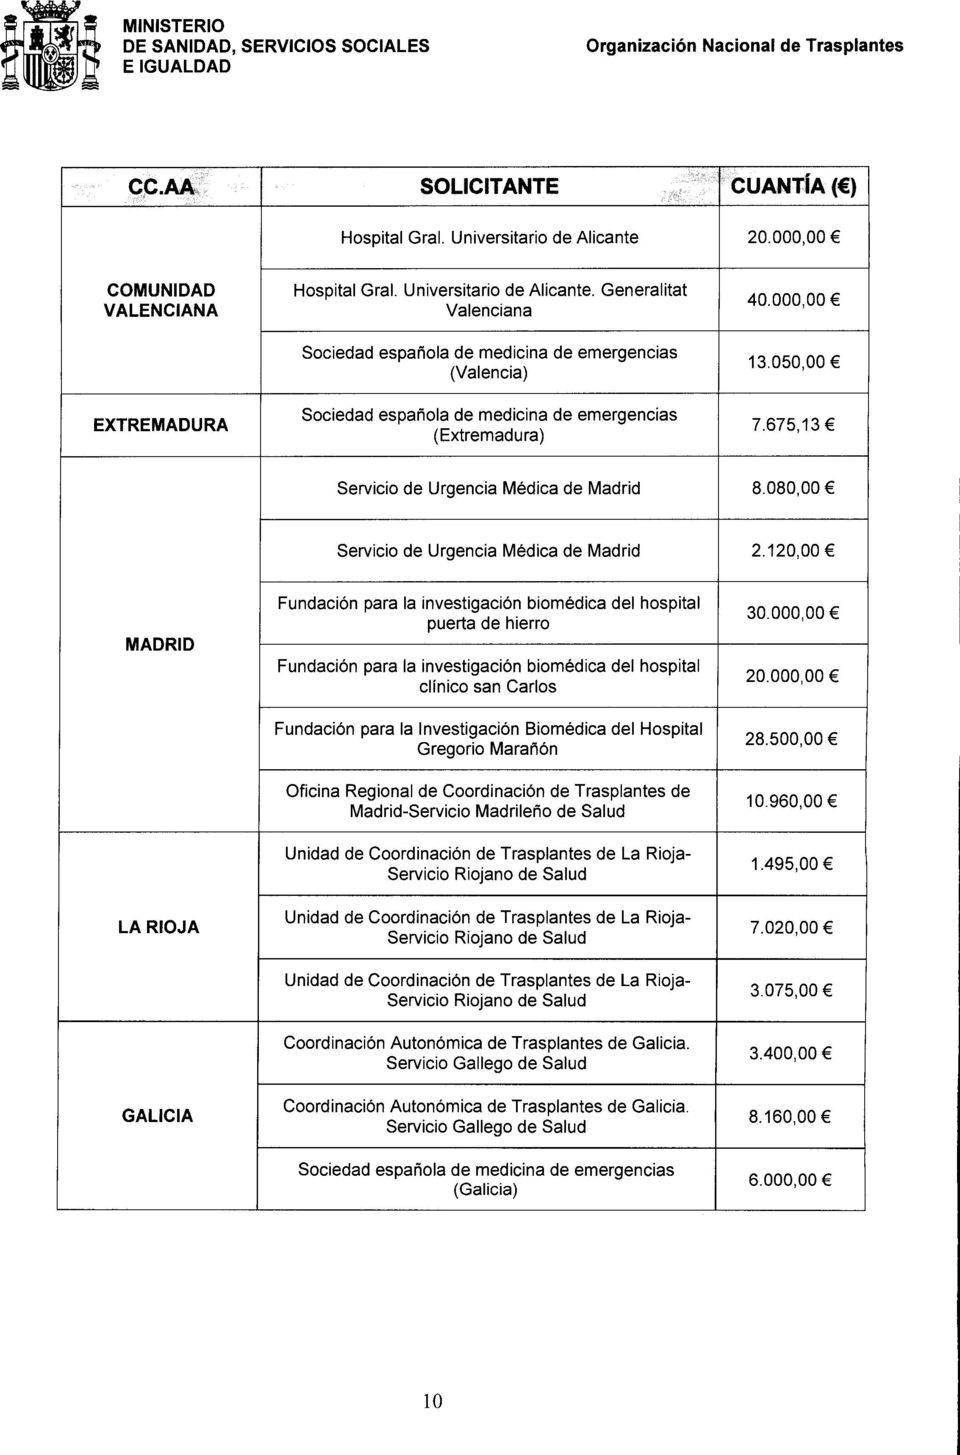 Generalitat Valenciana Sociedad espatiola de medicina de emergencias (Valencia) Sociedad espanola de medicina de emergencias (Extremadura) 40.000,00 13.050,00 7.